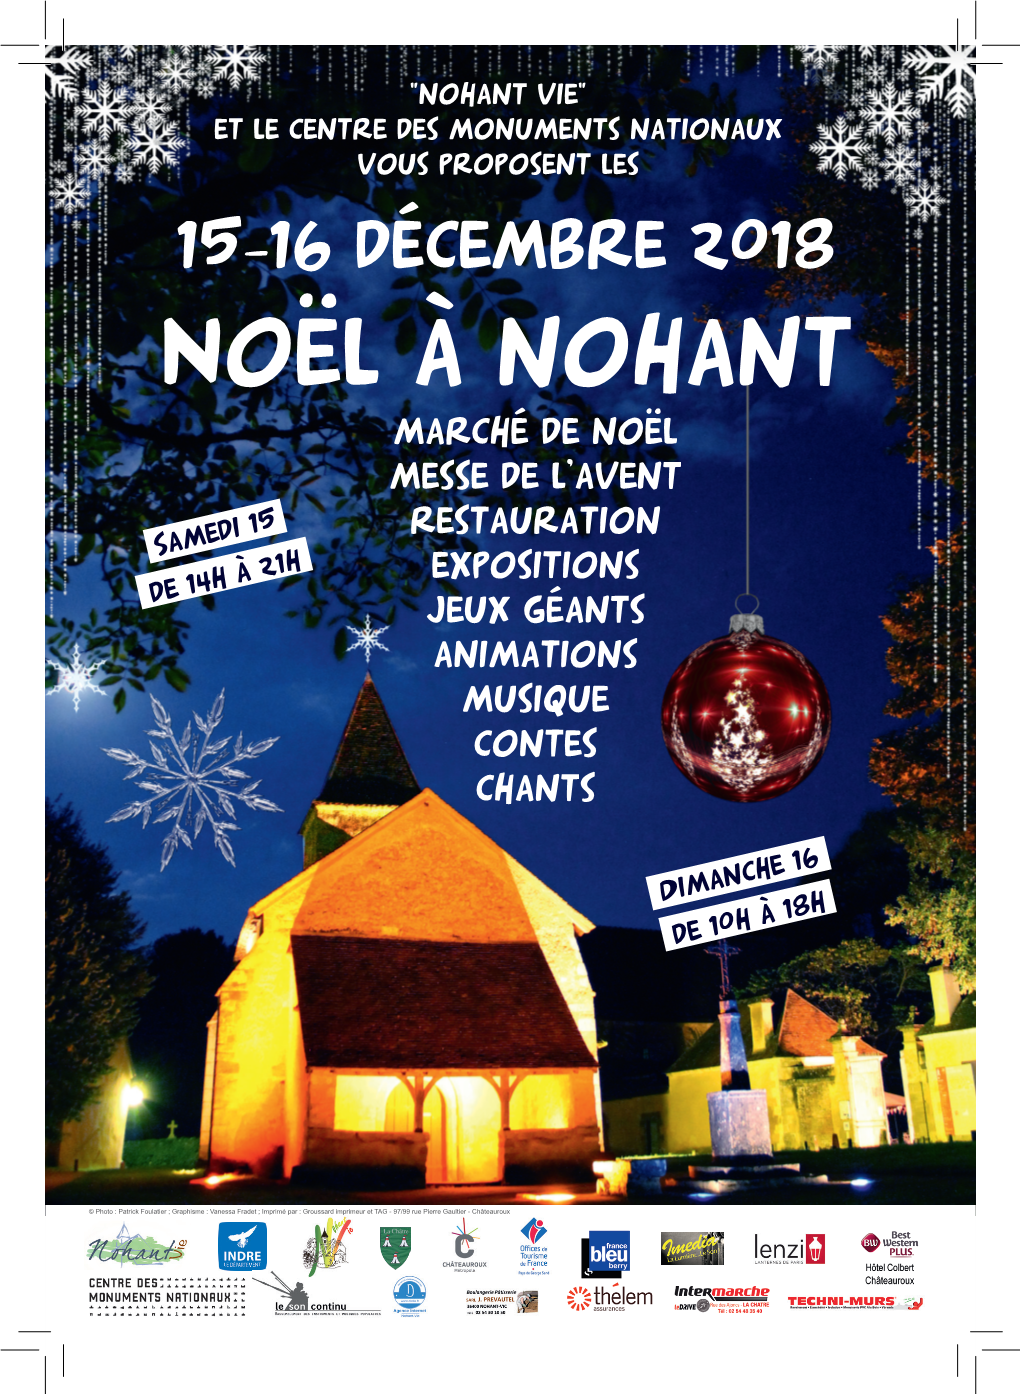 Noël À Nohant Marché De Noël Messe De L'avent Restauration Expositions Jeux Géants Animations Musique Contes Chants